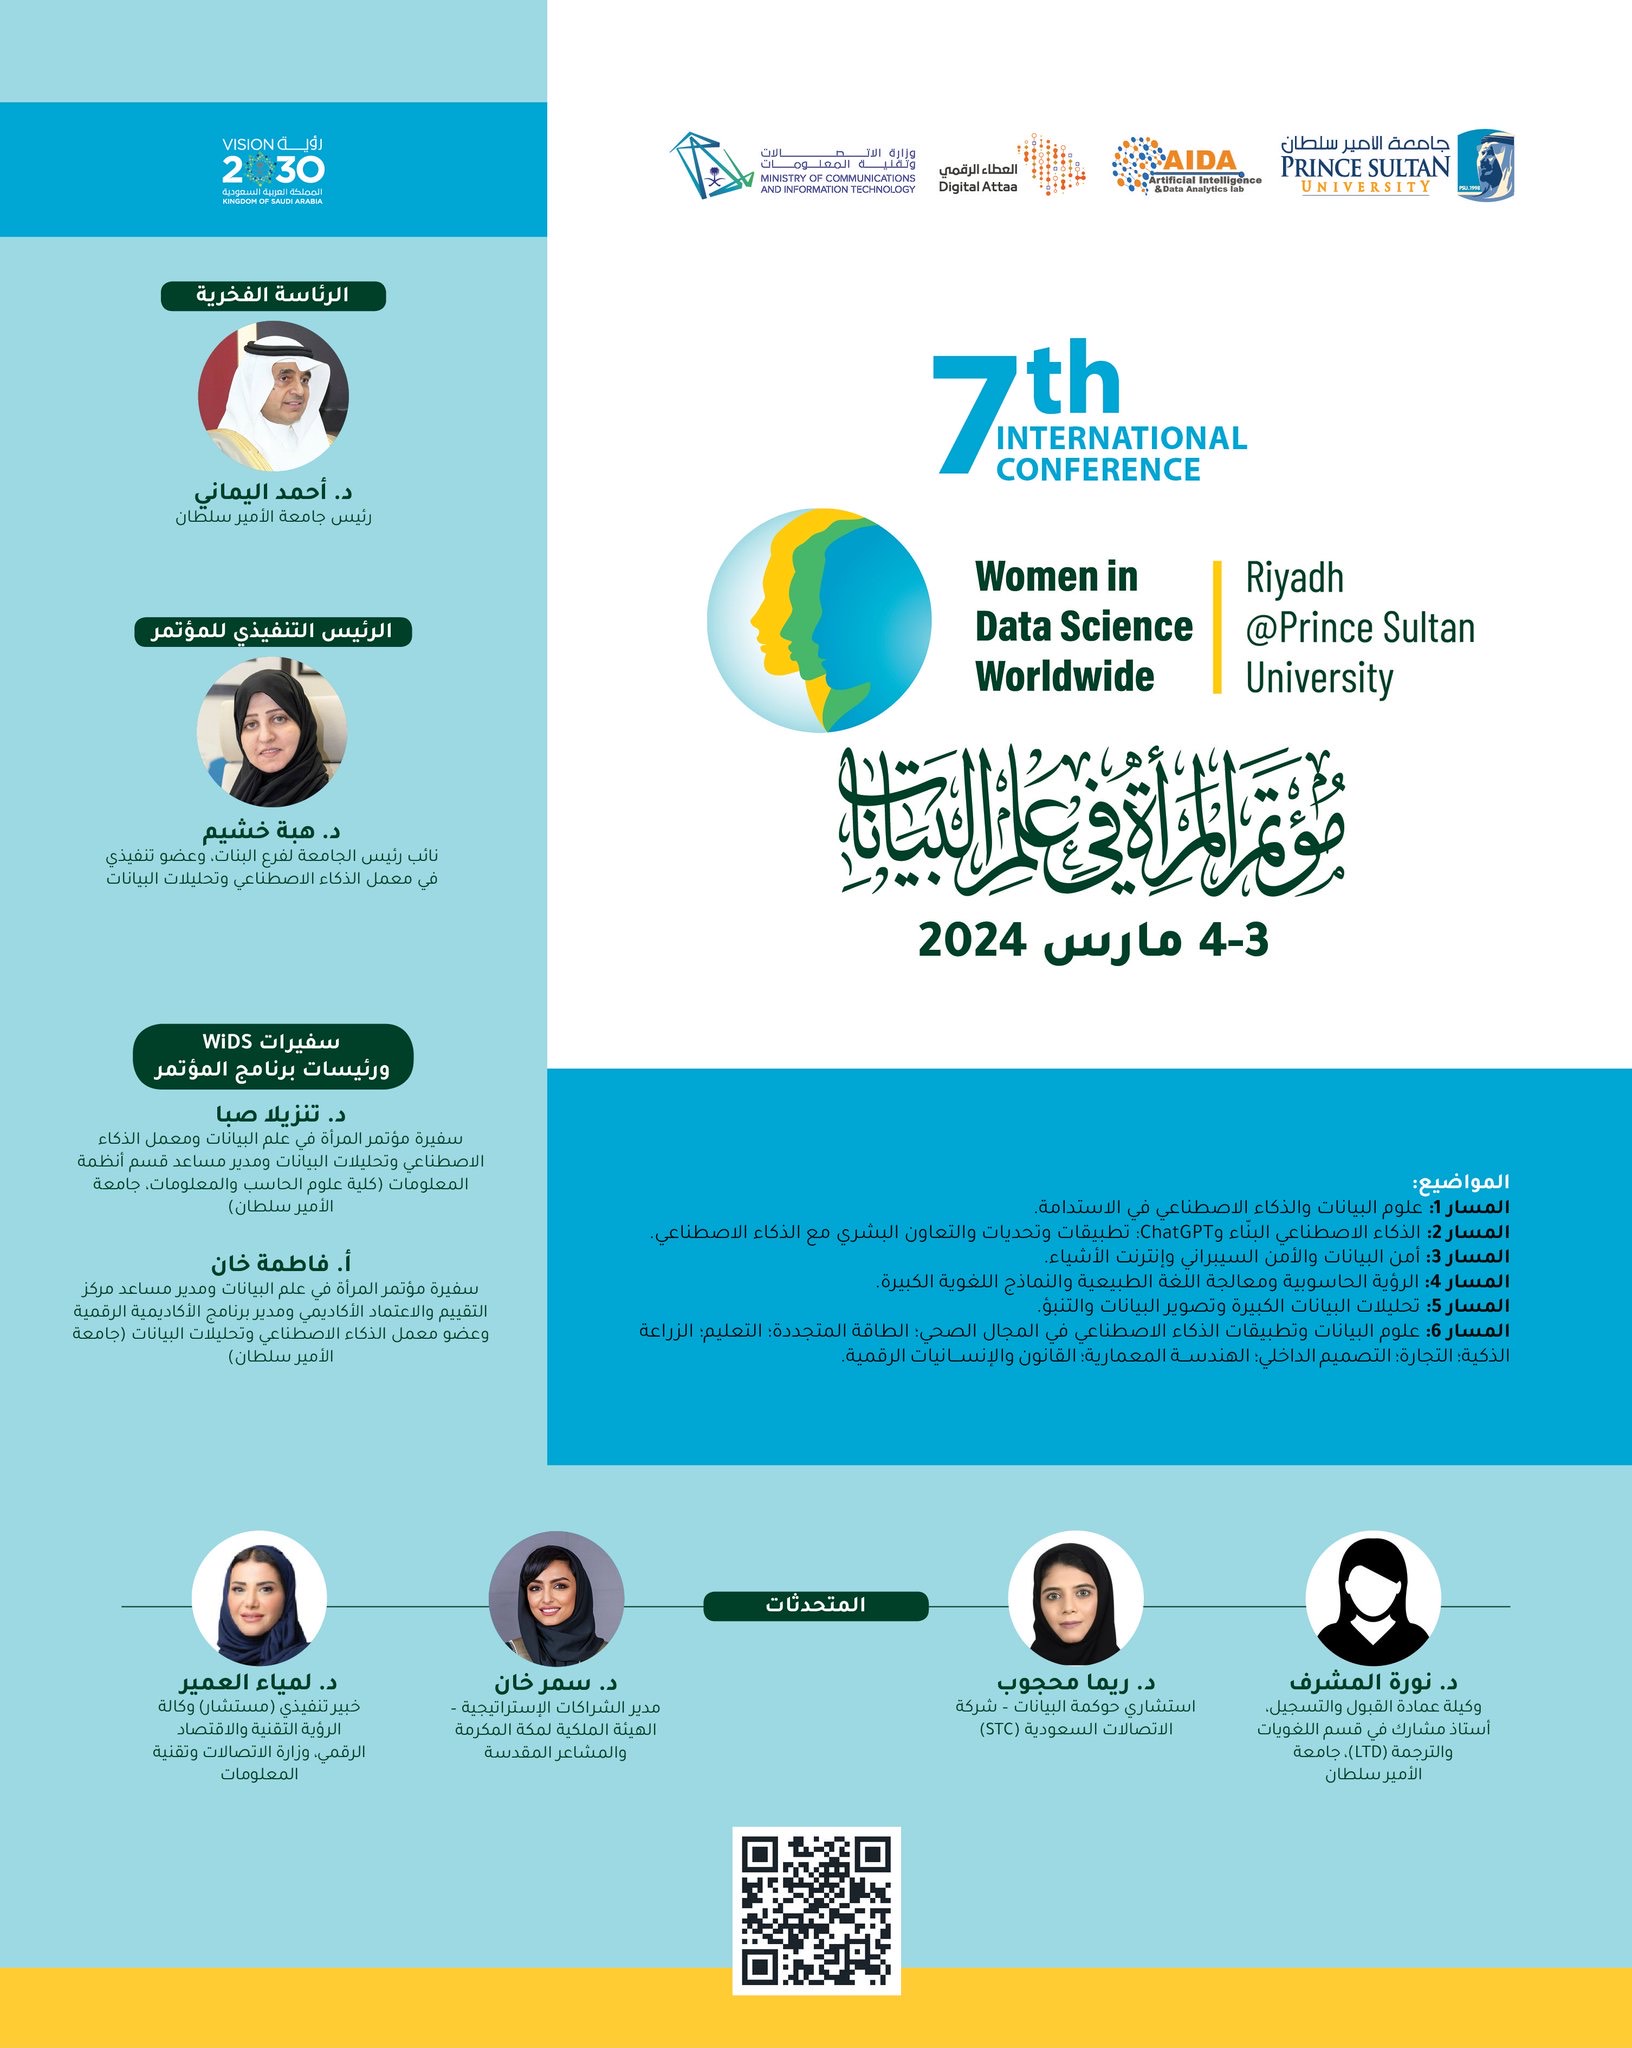 المؤتمر الدولي السابع للمرأة في علم البيانات